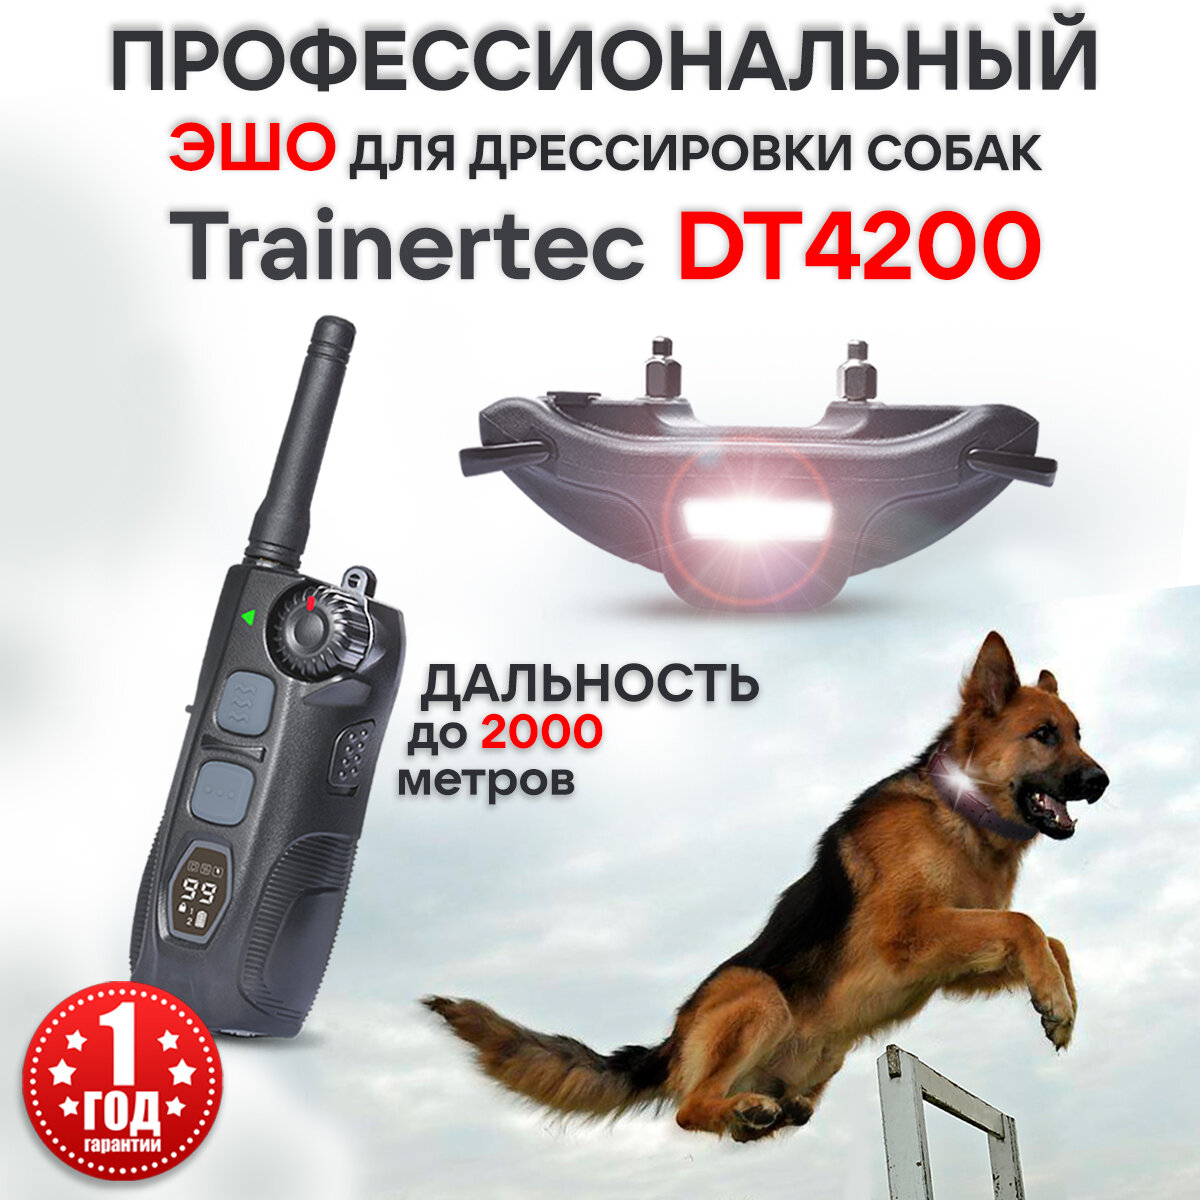 Электронный ошейник для собак Trainertec DT4200 профессиональный